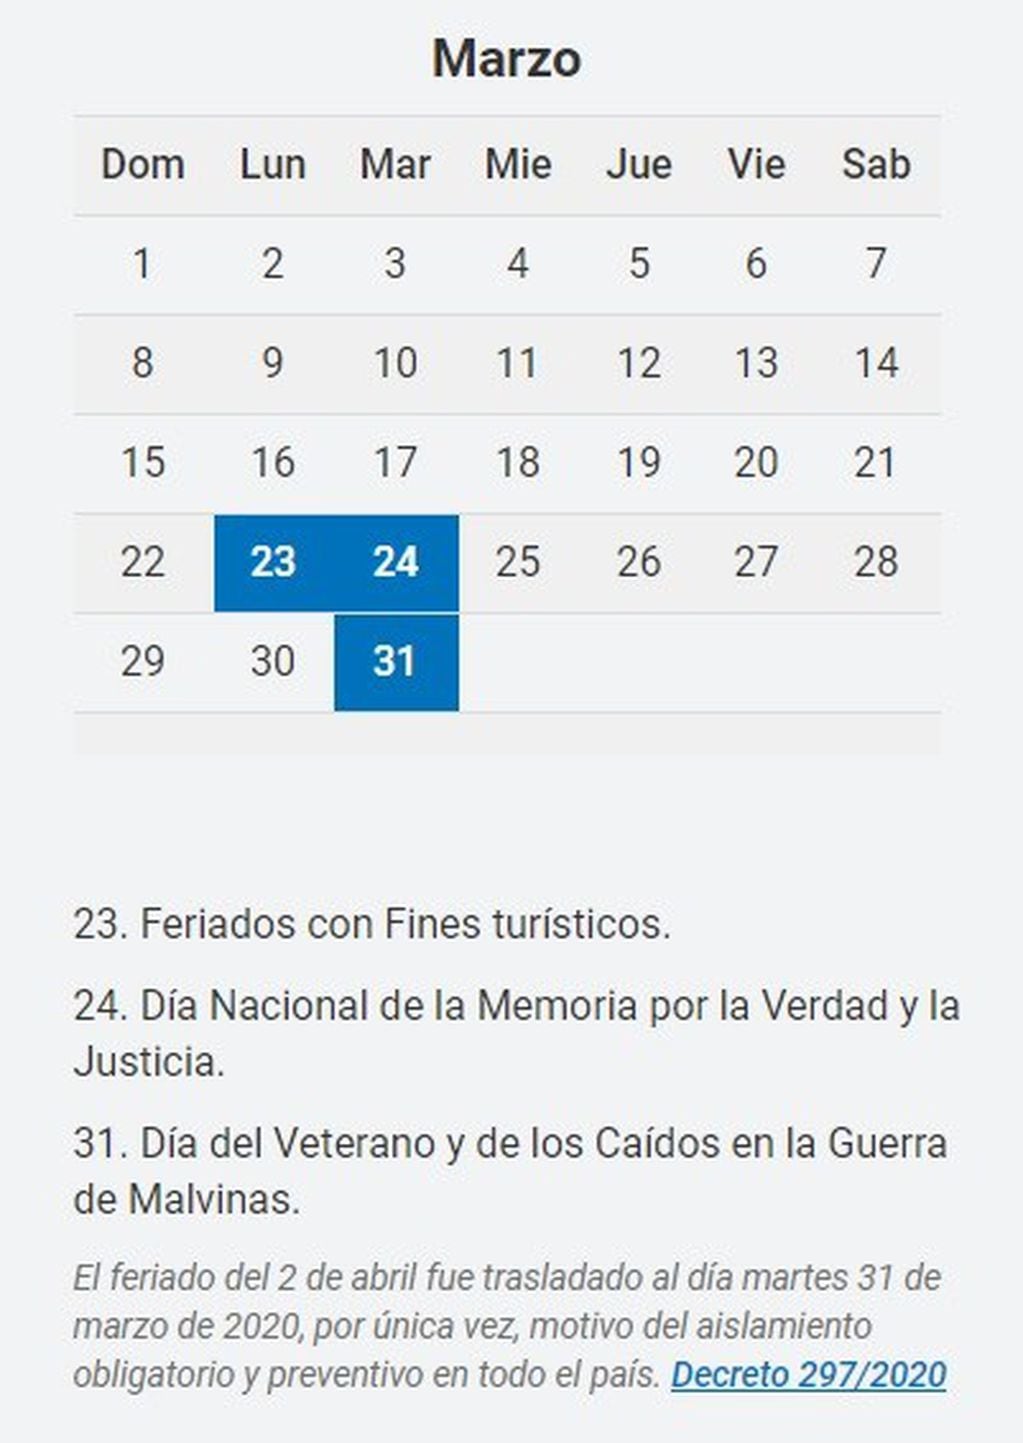 Los feriados de marzo (Fuente: https://www.argentina.gob.ar/interior/feriados-nacionales-2020)